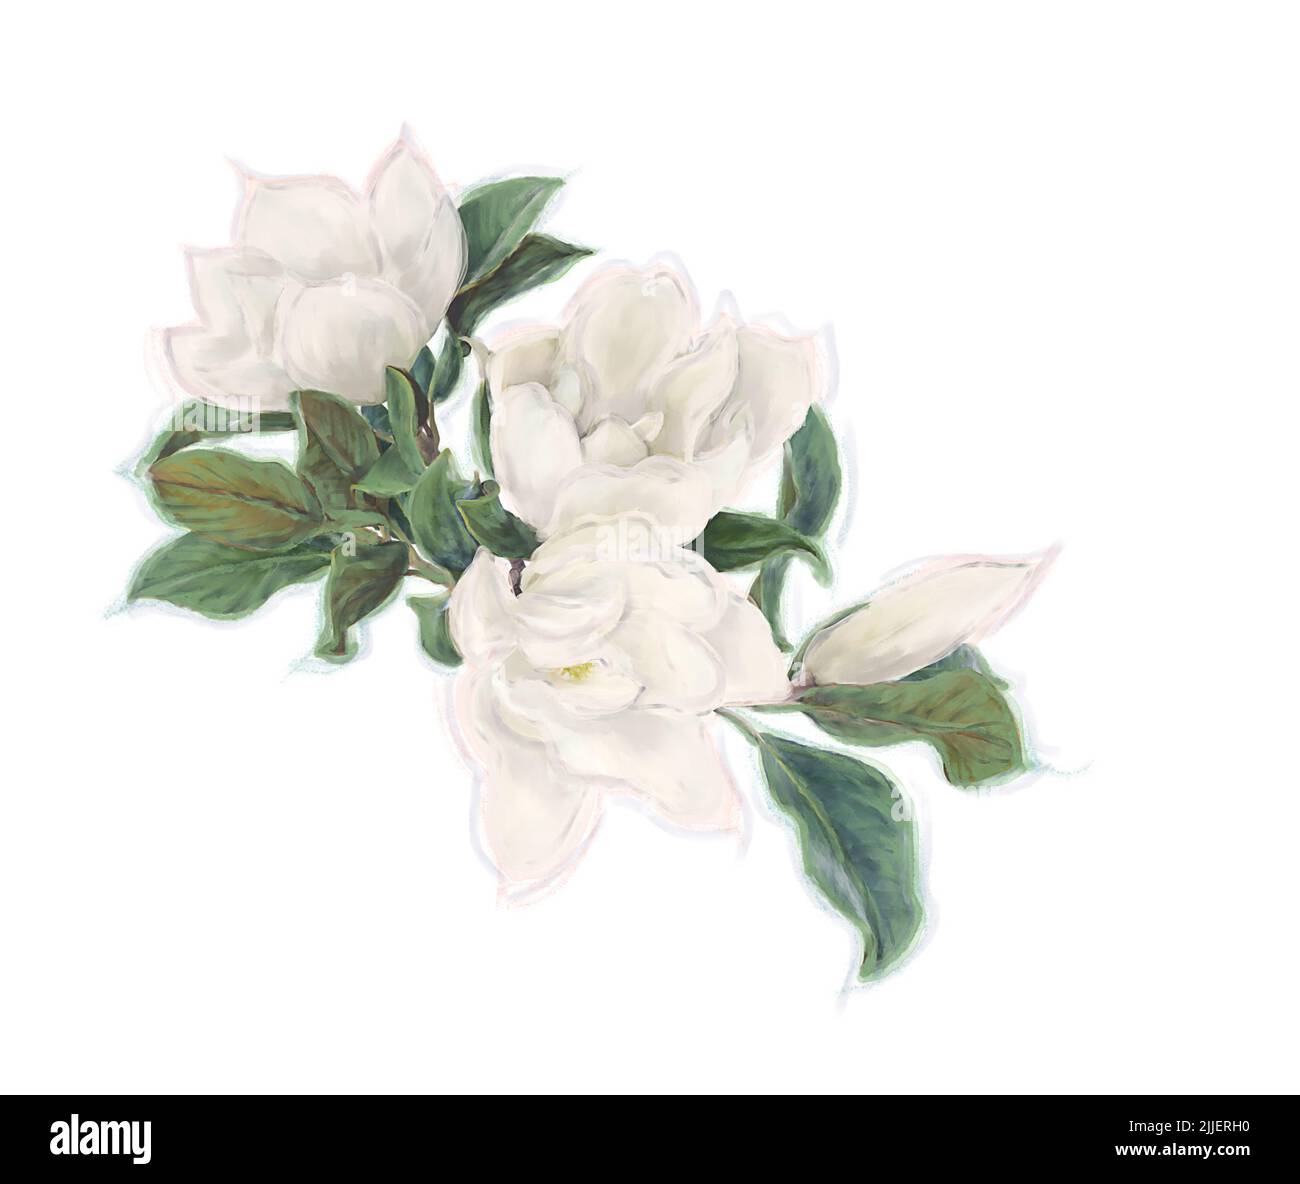 Magnolia Fiori su sfondo bianco. Immagine acquerello. Foto Stock